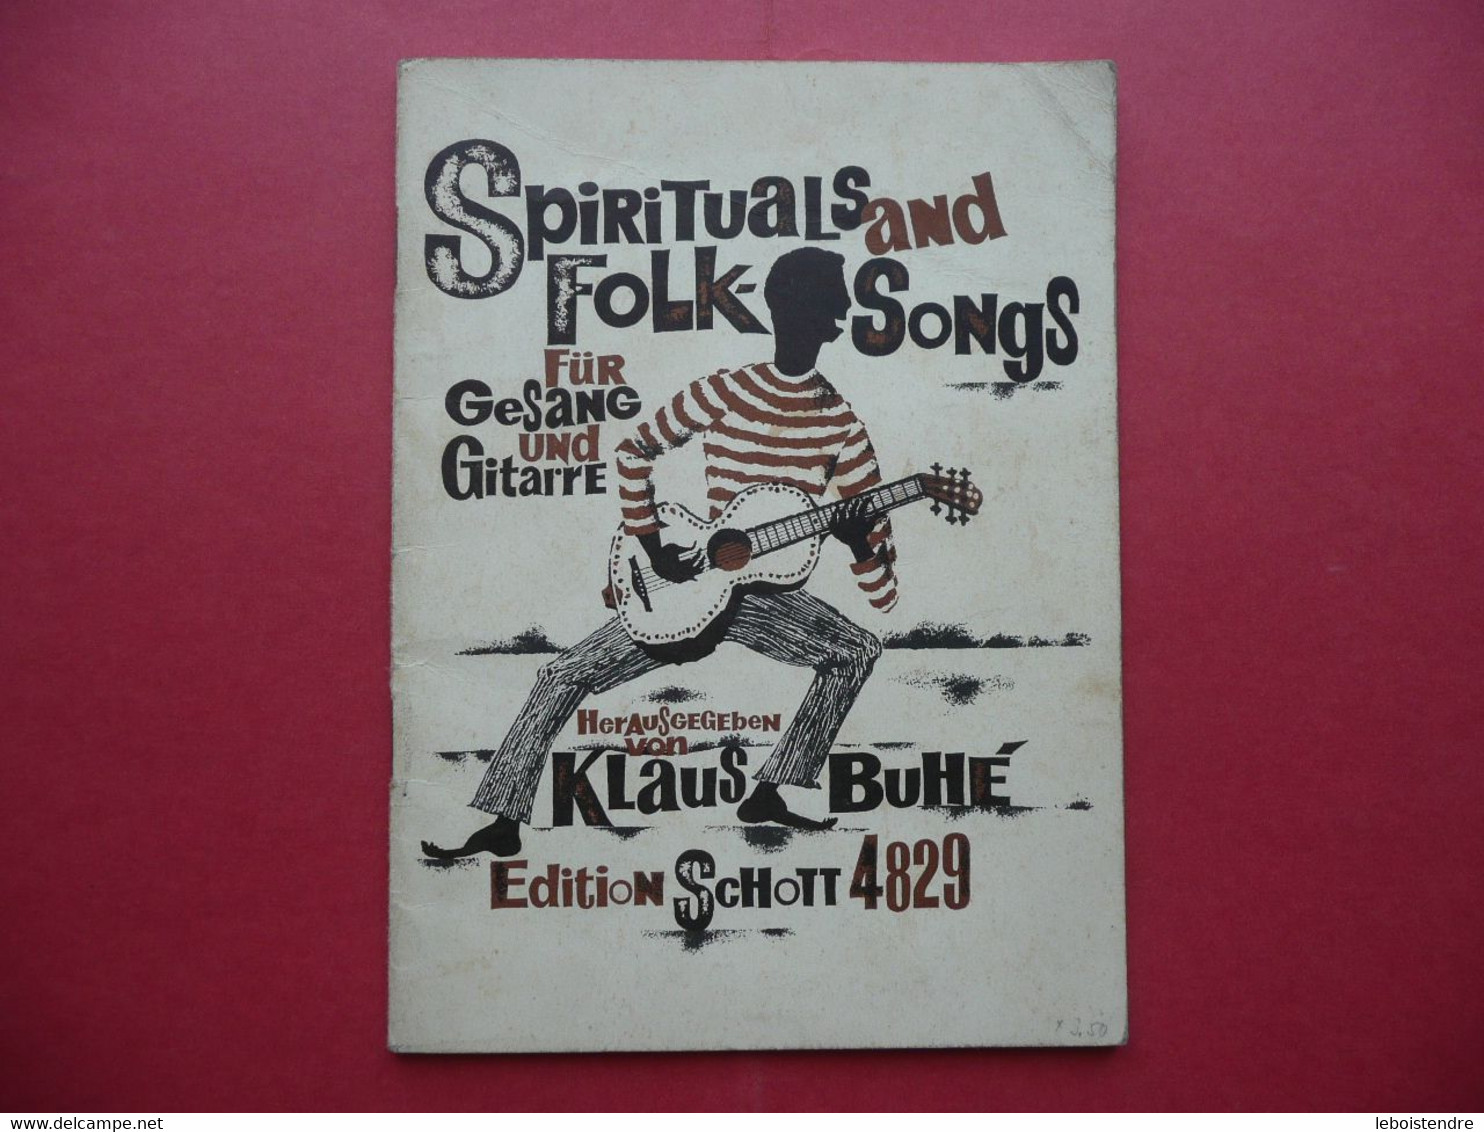 SPIRITUALS AND FOLK SONGS FUR GESANG UND GUITARRE HERAUSGEGEBEN VON KLAUS BUHE EDITION SCHOTT 4829 PARTITIONS - Musica